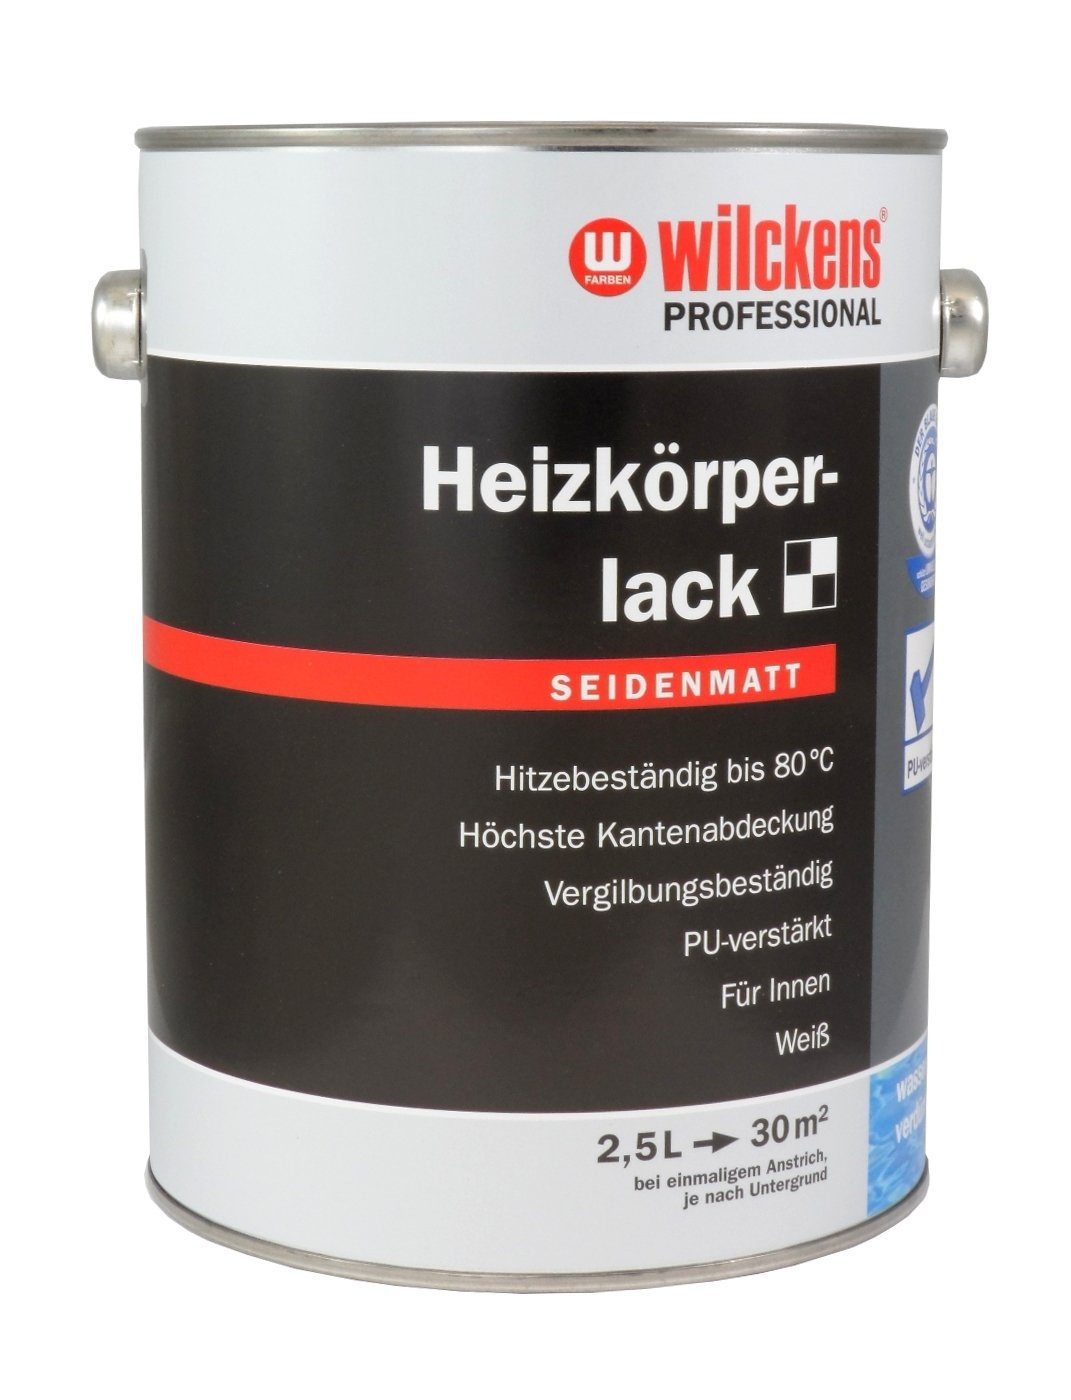 Weiß PROFESSIONAL Heizkörperlack Lack 2,5 Liter Seidenmatt wilckens®